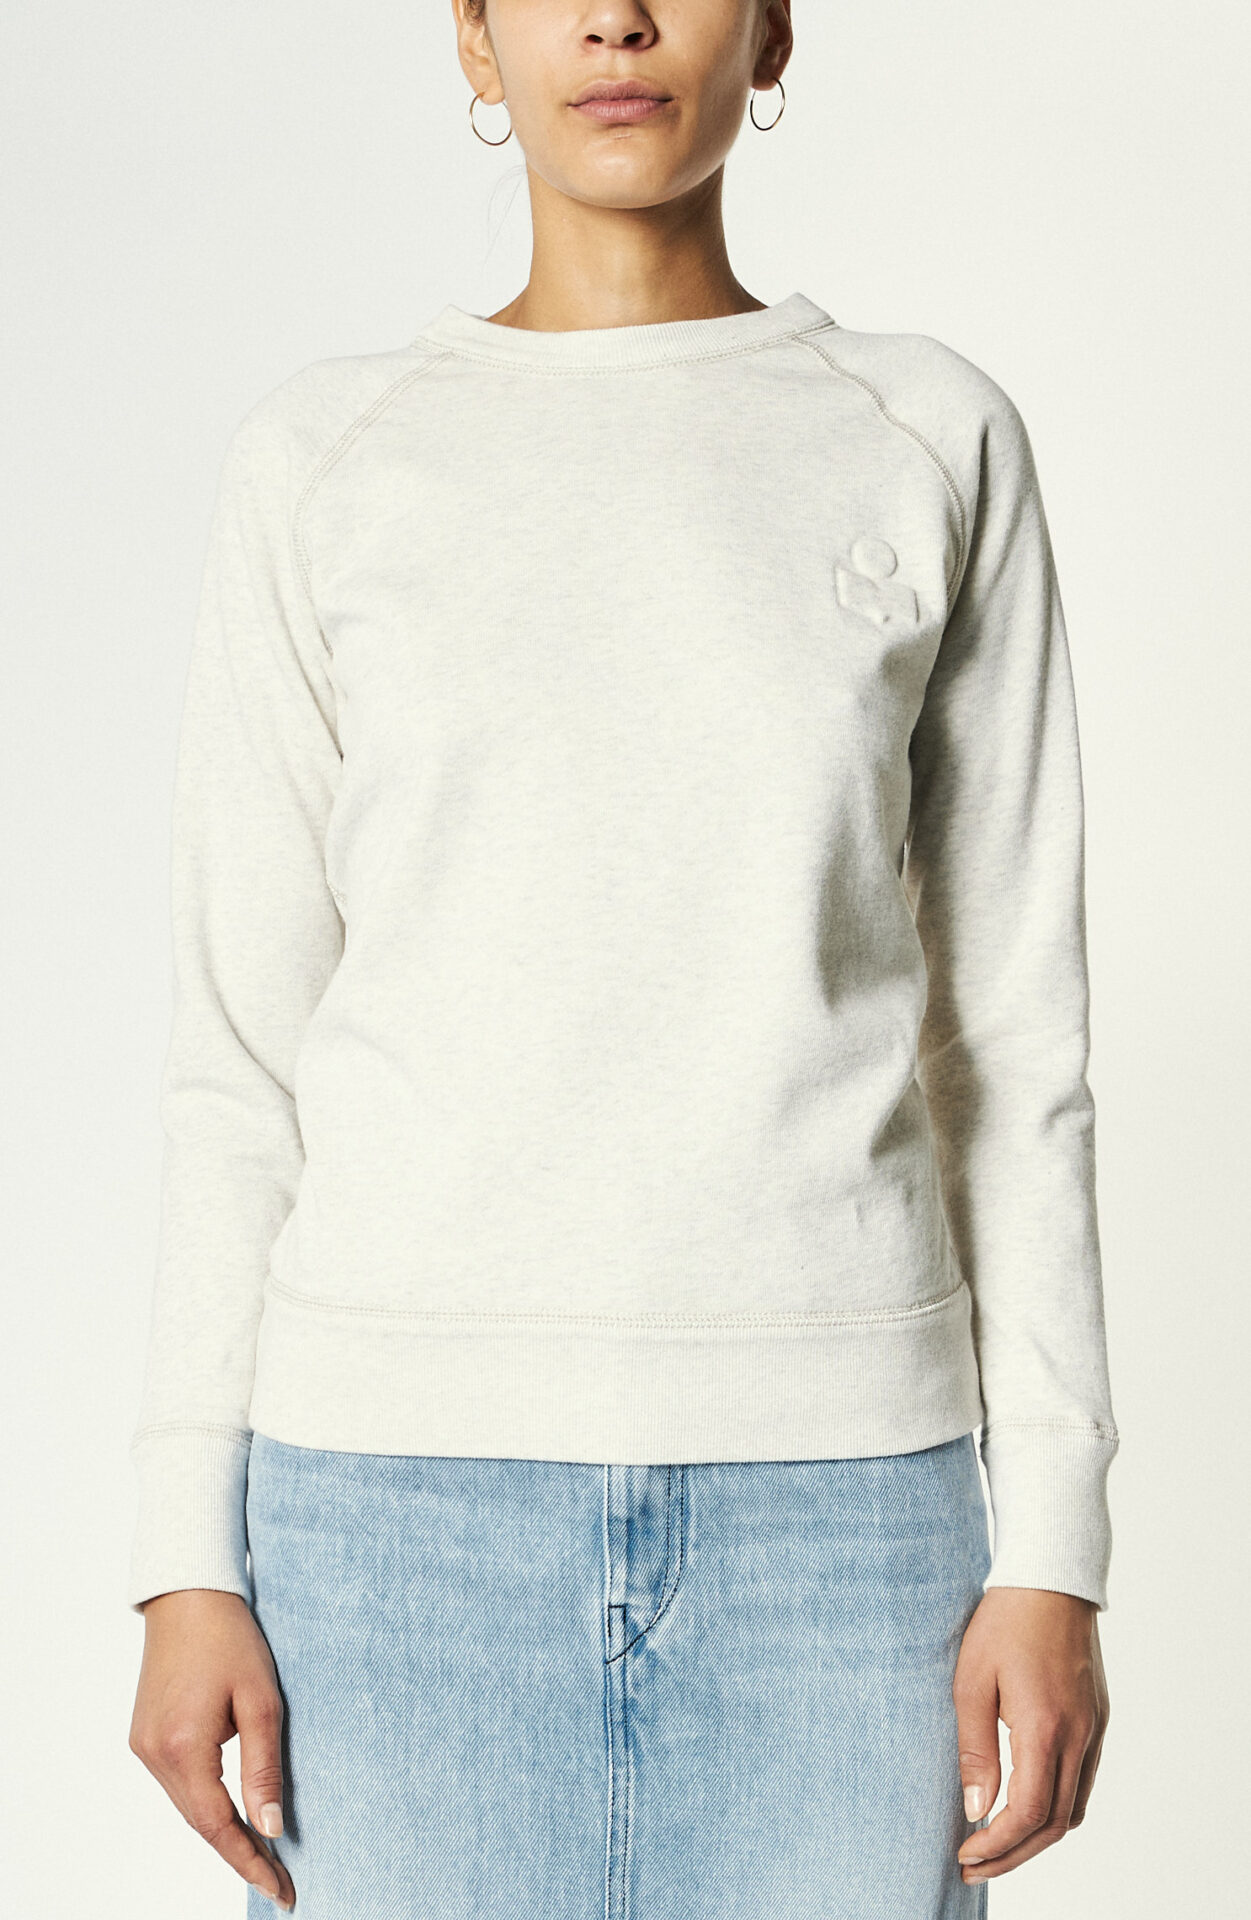 Marant - Sweater "Milly" in ecru - Schwittenberg